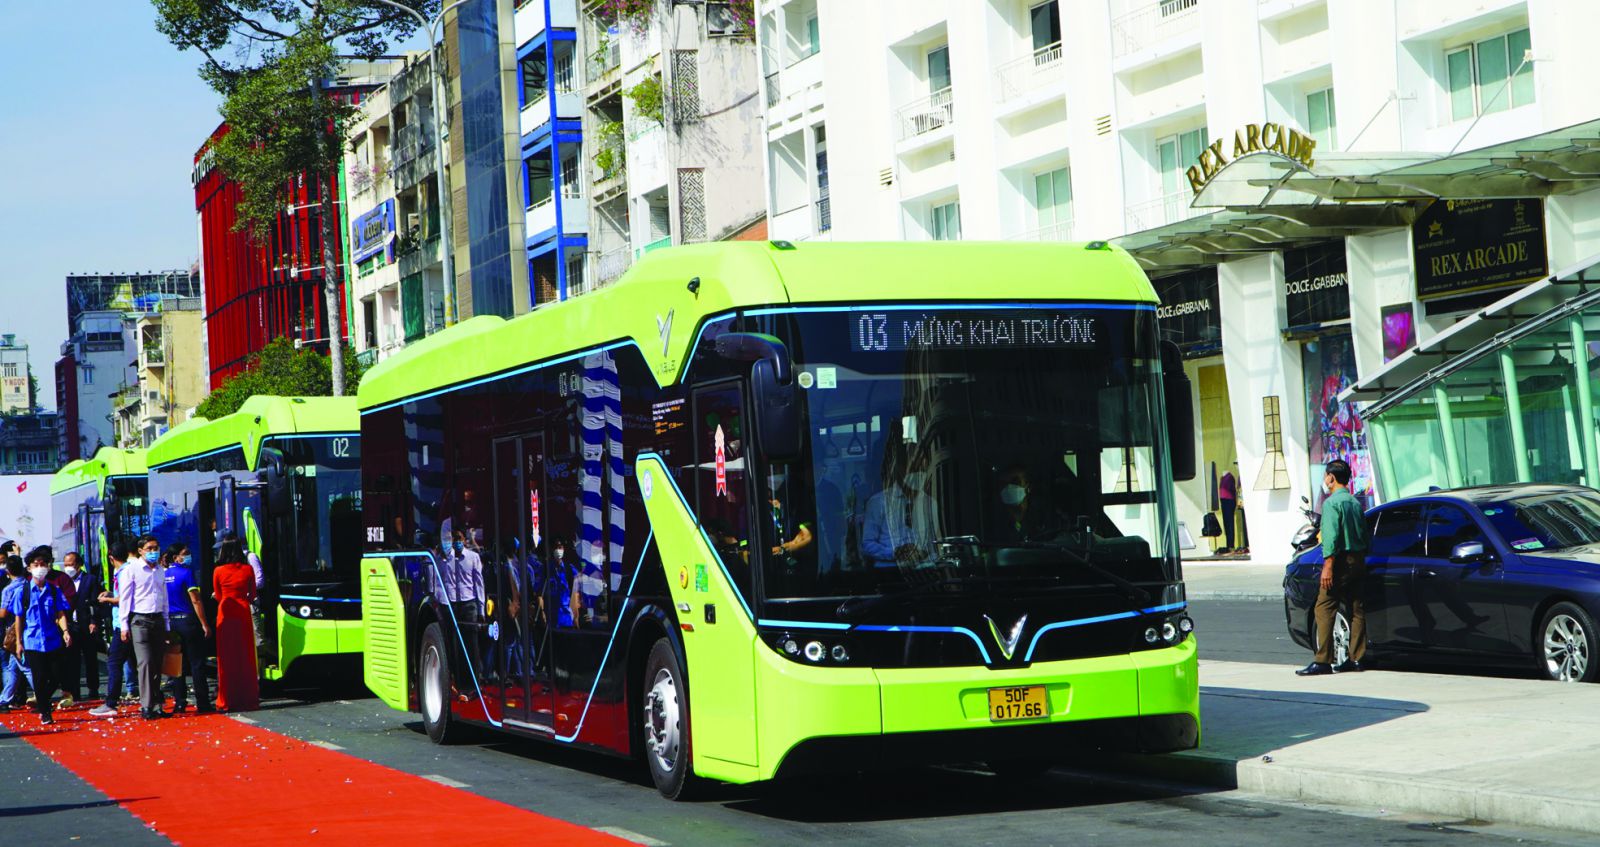  Dòng buýt điện thông minh VinBus do VinFast sản xuất sử dụng động cơ điện, không phát thải CO2 được thí điểm hoạt động trên địa bàn TP.HCM.